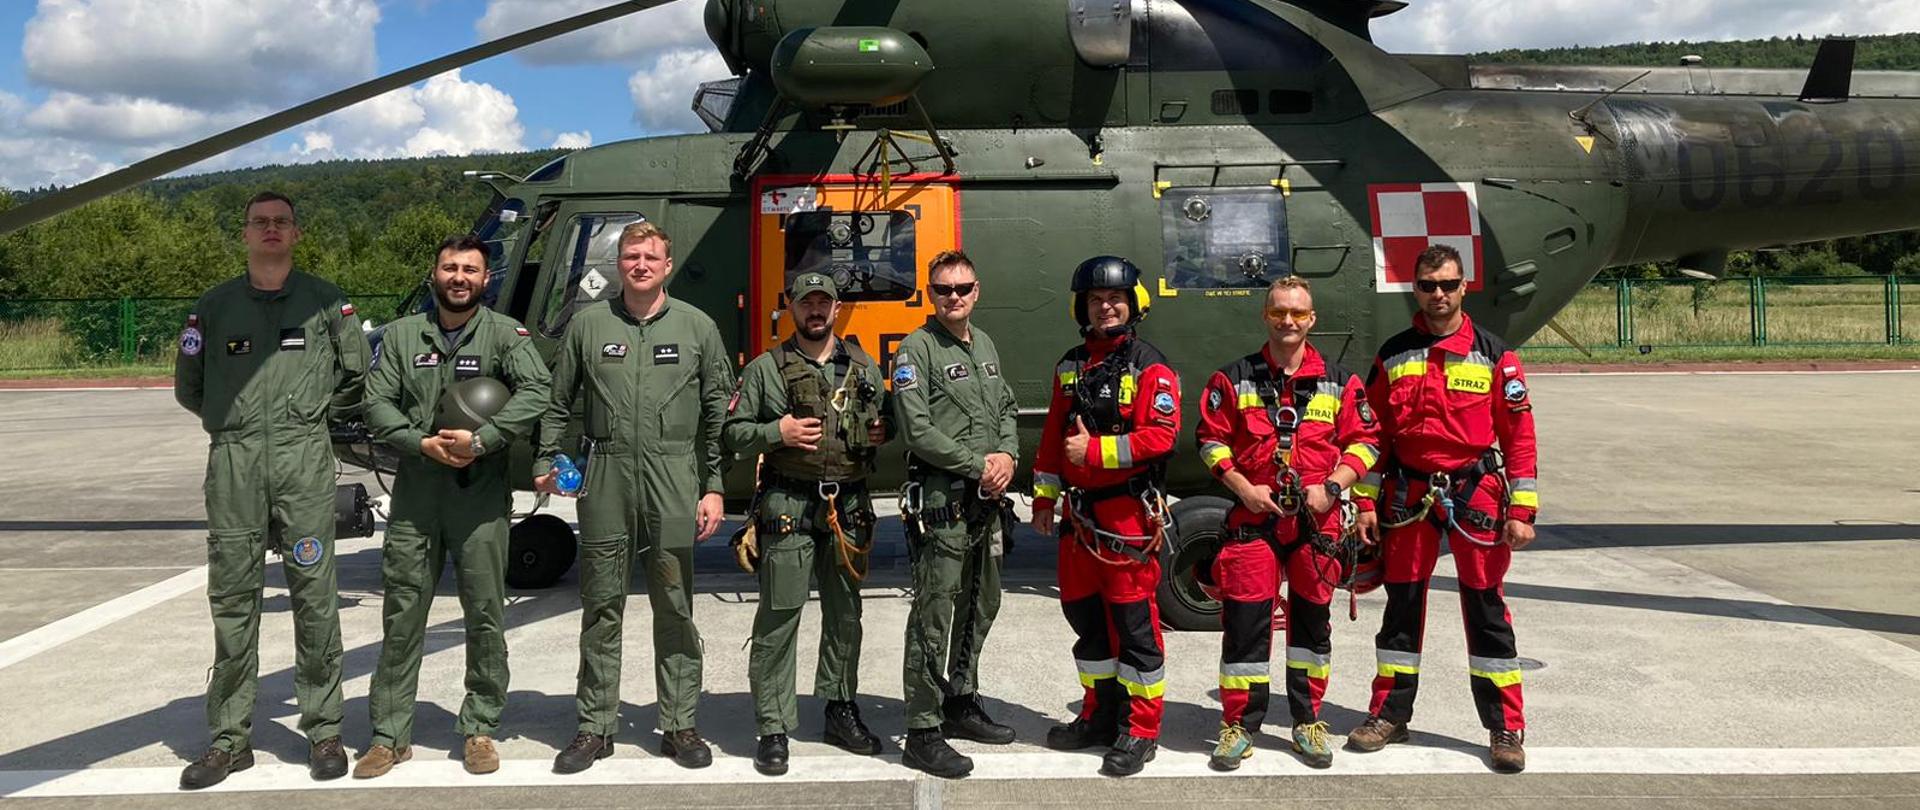 Zdjęcie przedstawia trzech strażaków wyposażonych w sprzęt ratownictwa wysokościowego wraz z pięcioma przedstawicielami Lotniczego Zespołu Poszukiwawczo Ratowniczego nr 8. W tle widoczny jest śmigłowiec W-3 "Sokół".